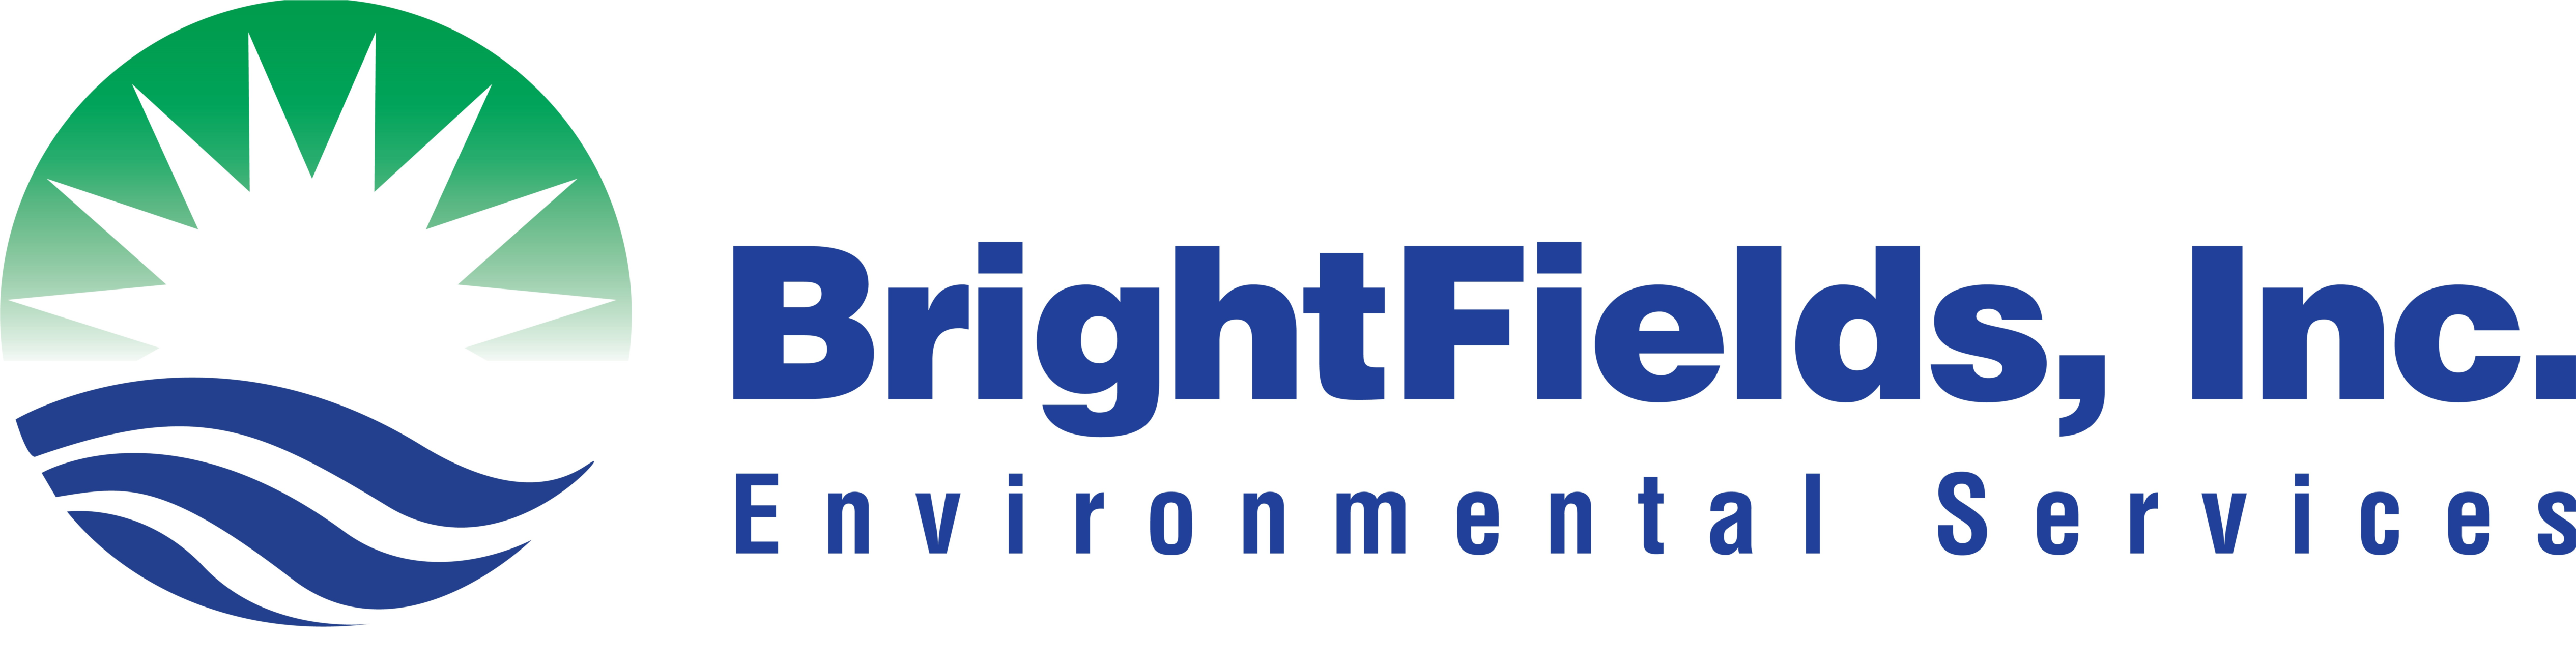 BrightFields, Inc. logo